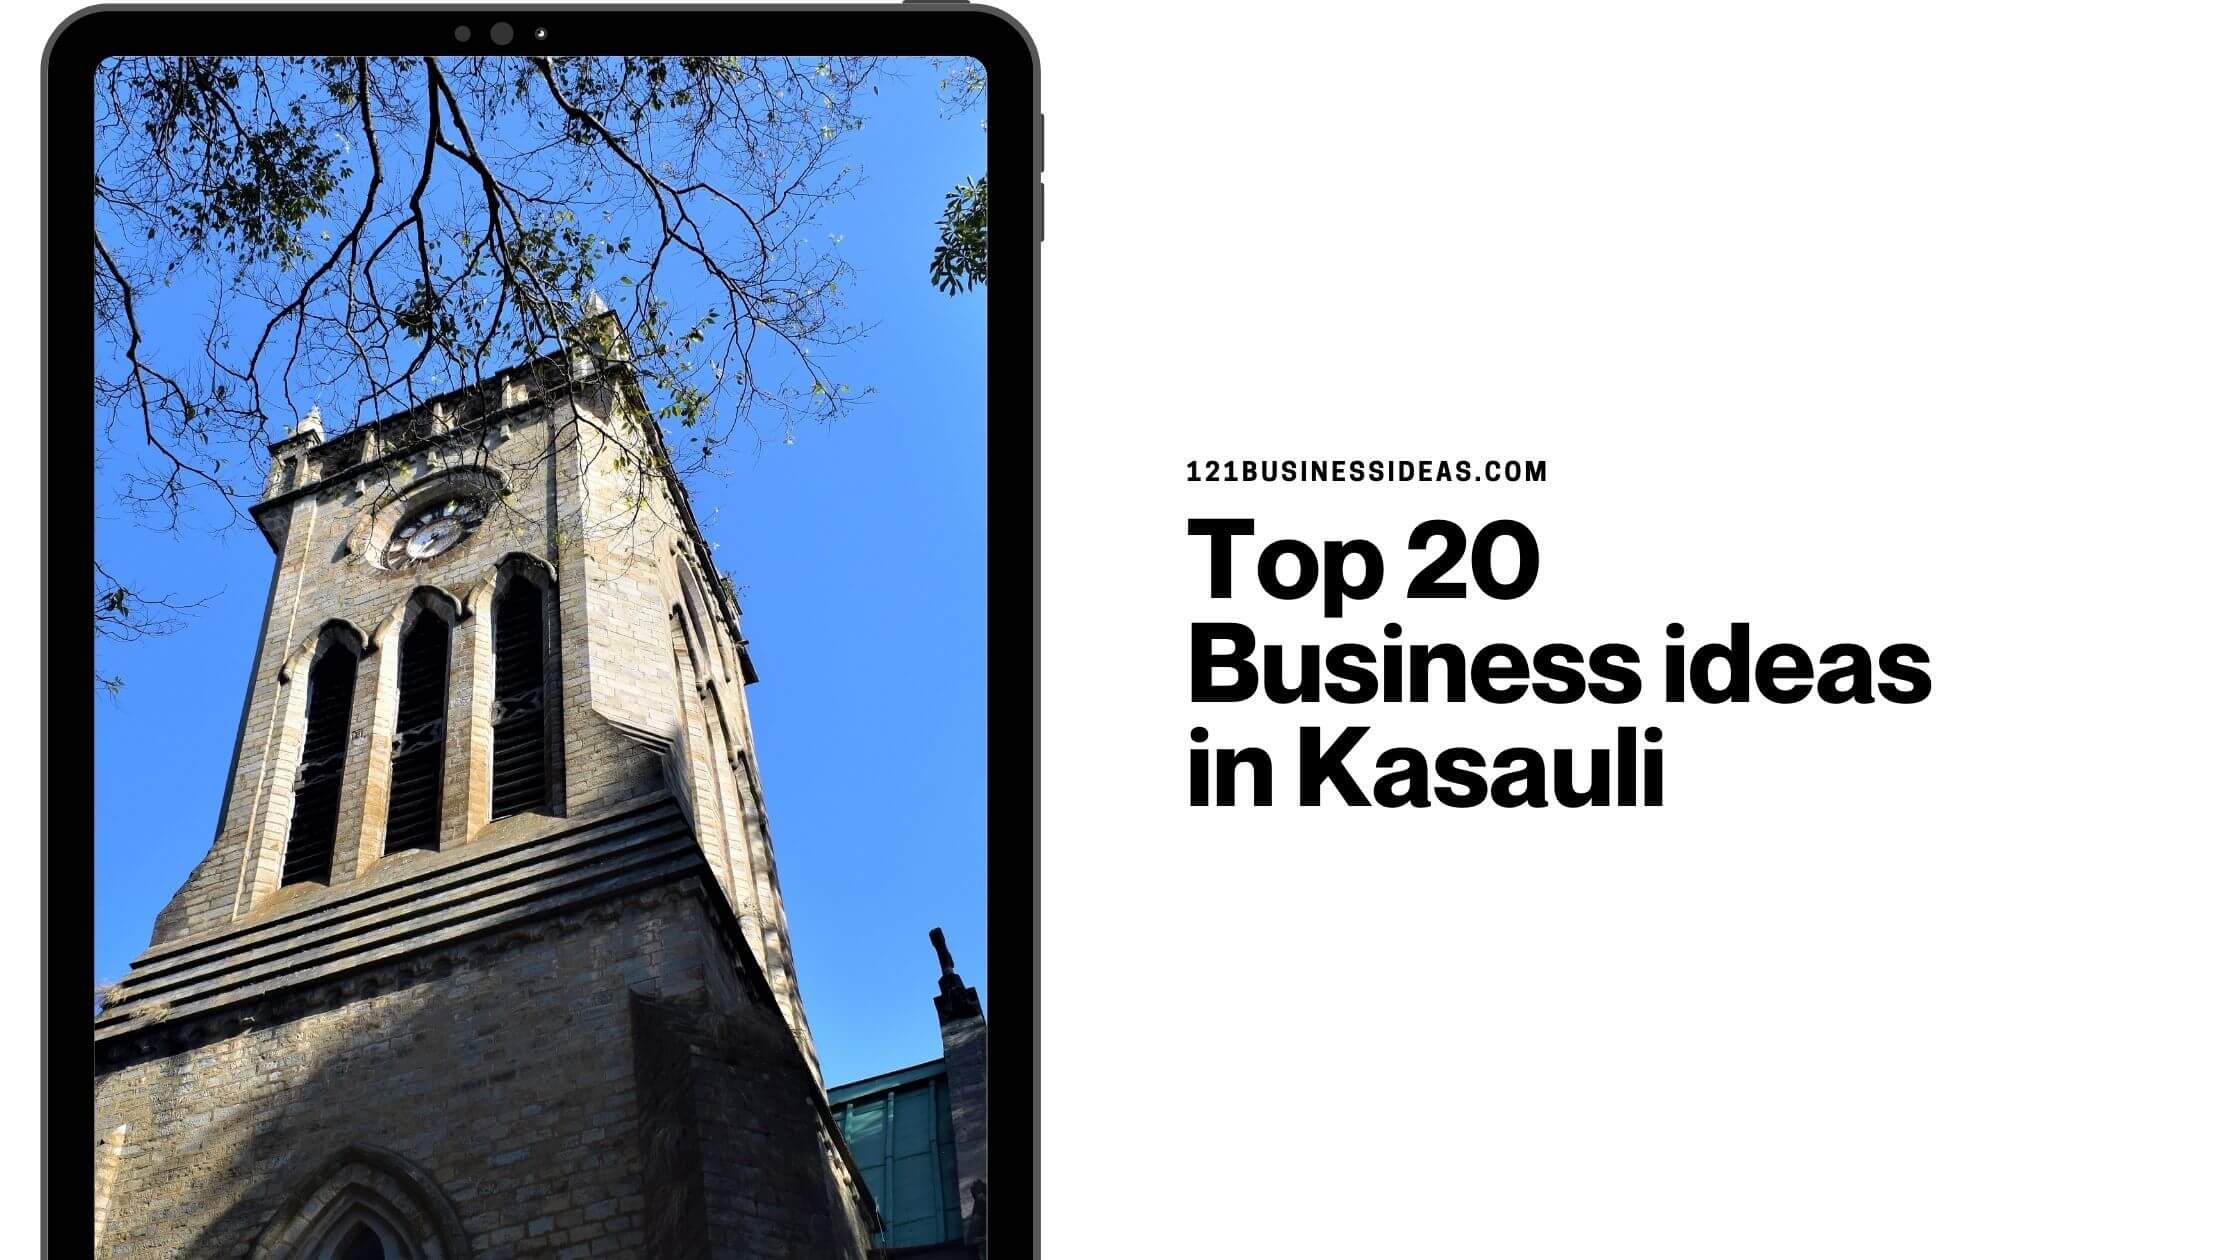 Top 20 Business ideas in Kasauli (1)